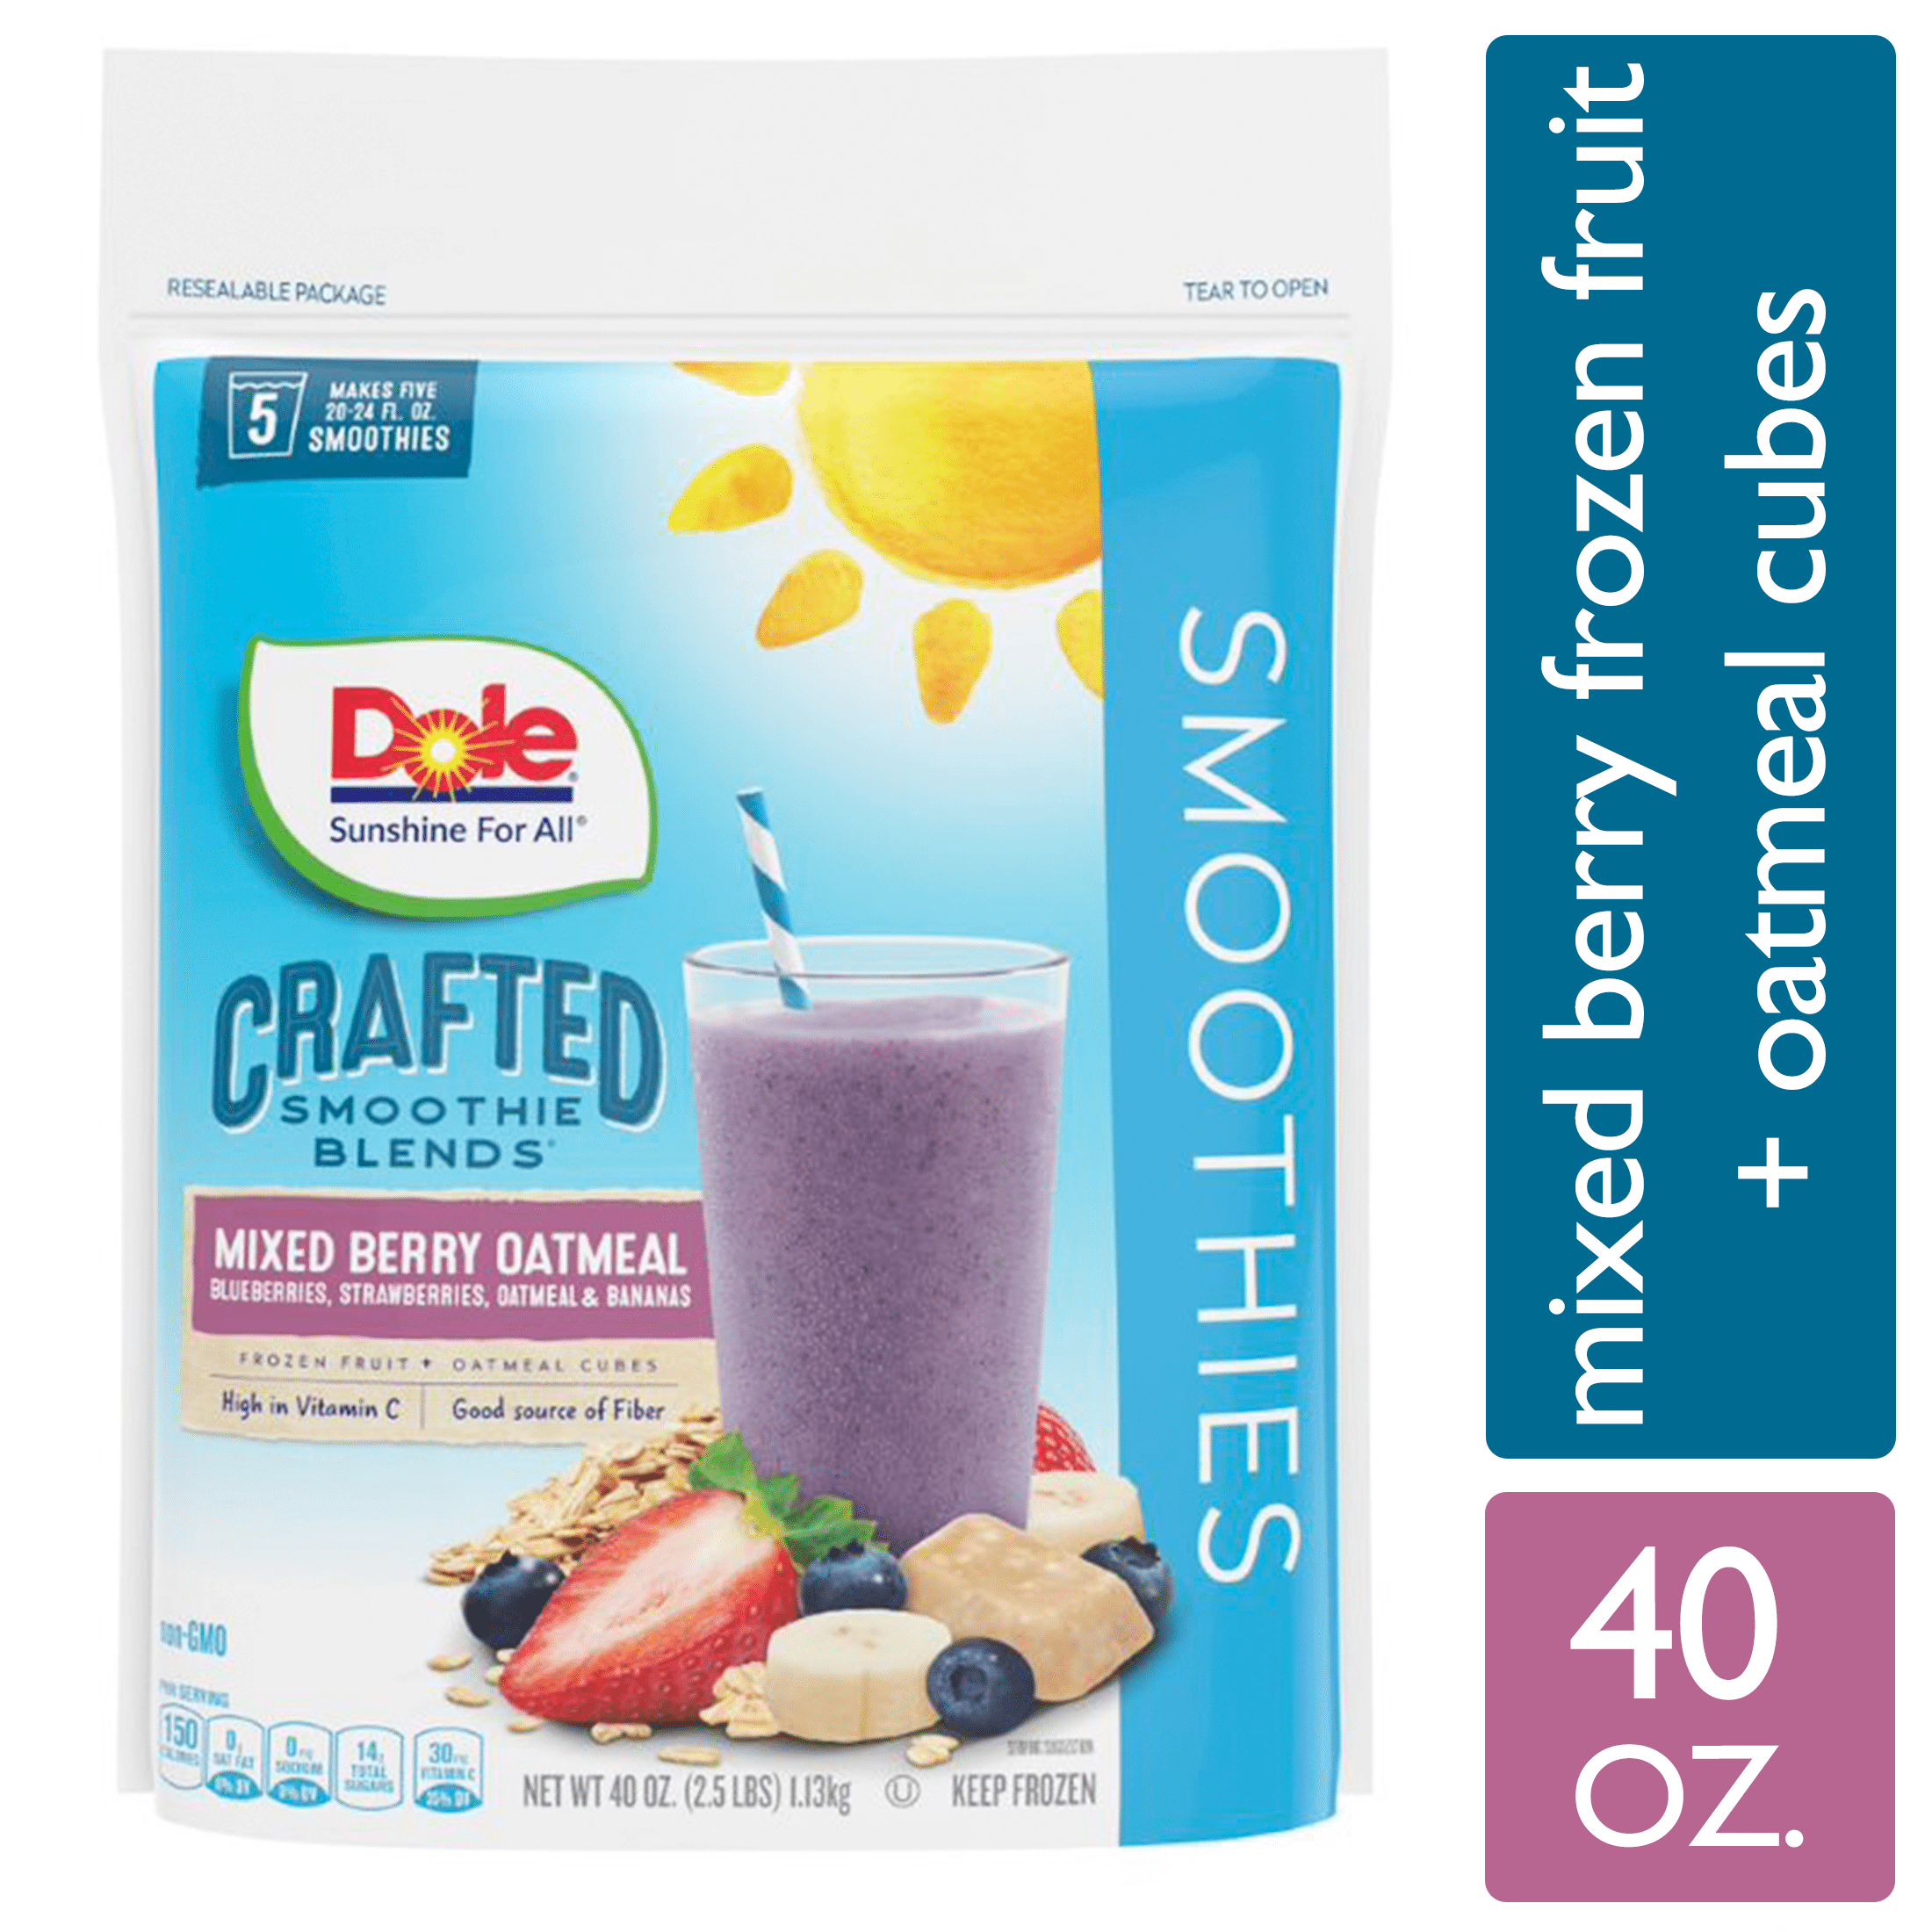 Dreyer's/Edy's Smoothies Frozen Yogurt Smoothie Mix Mixed Berry - Add Milk